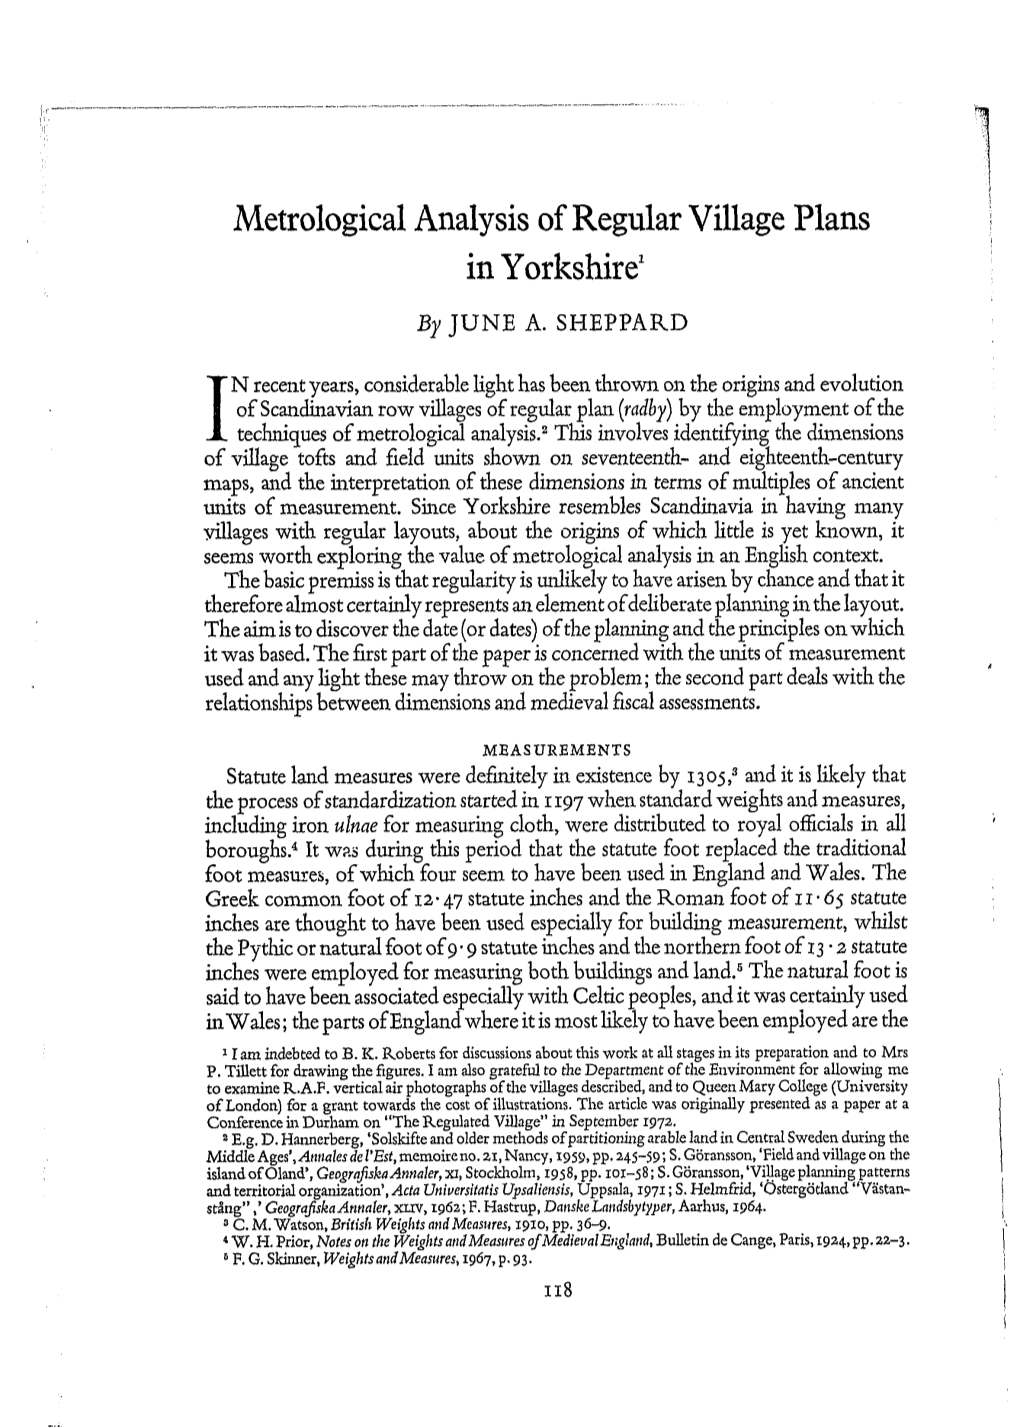 Metrological Analysis of Regular Village Plans in Yorkshire